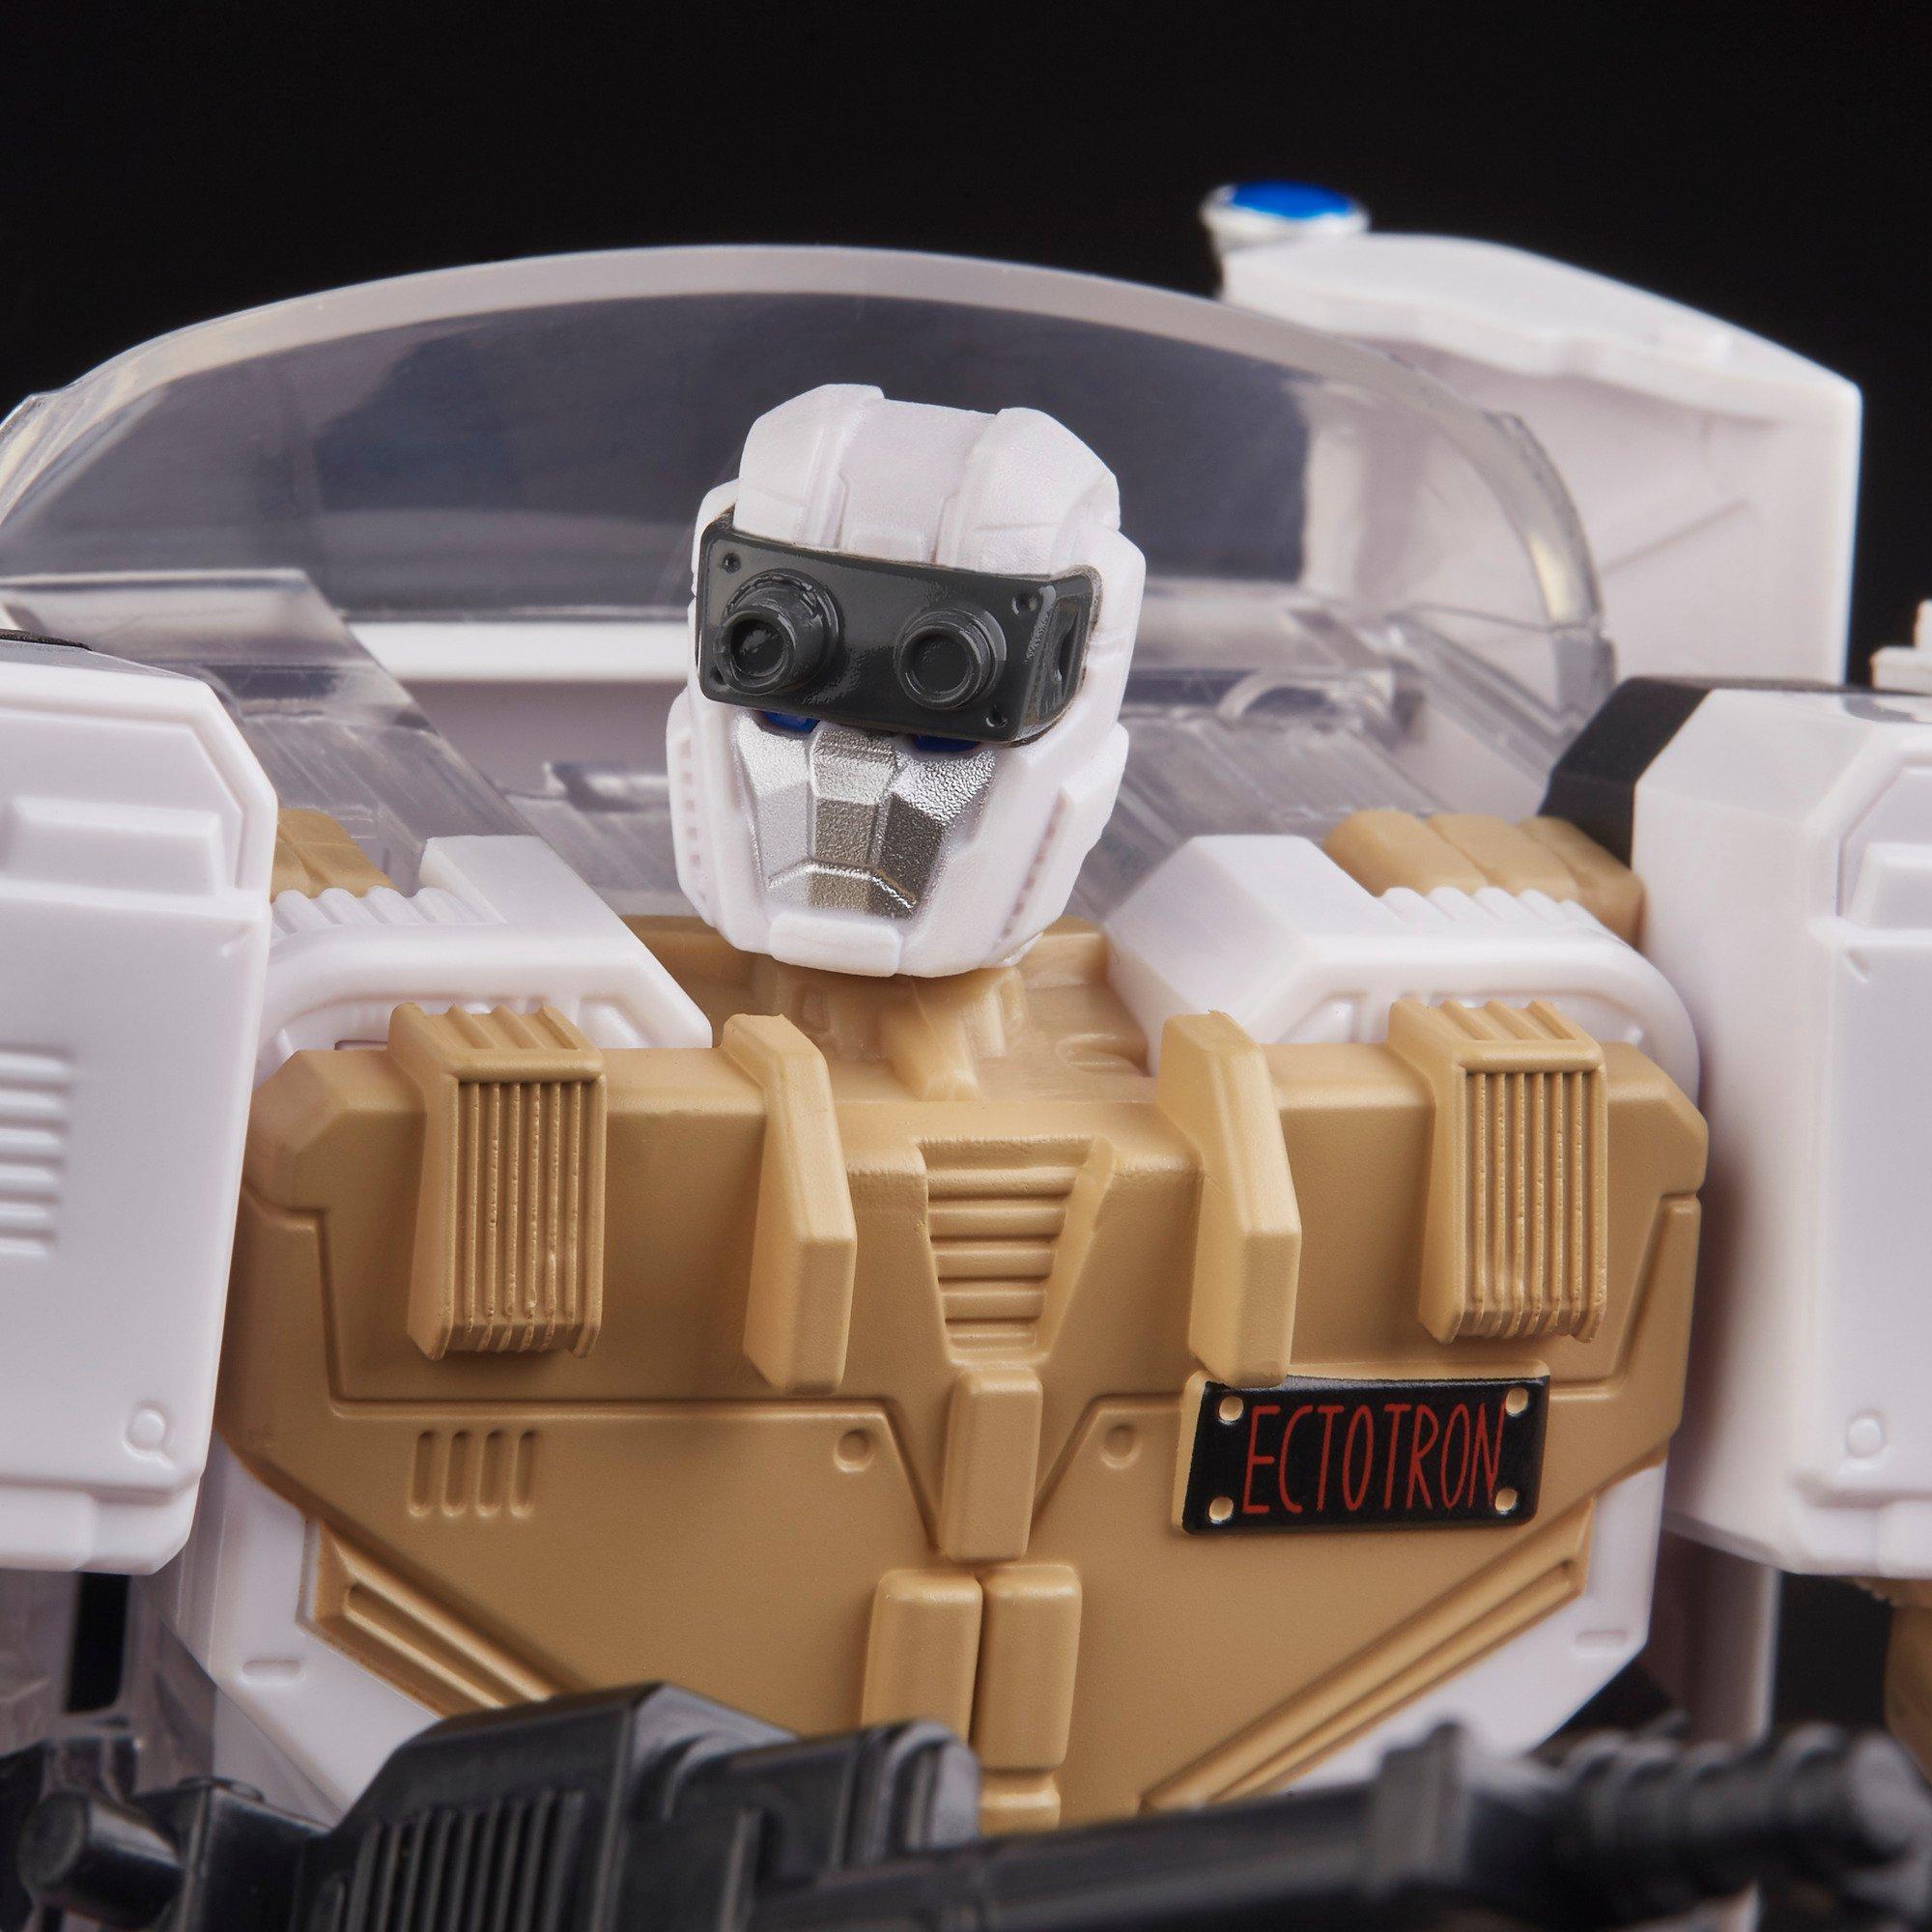 Hasbro Transformers Collaborative Ghostbusters Ecto-1 Ectotron Action Figure GameStop Exclusive